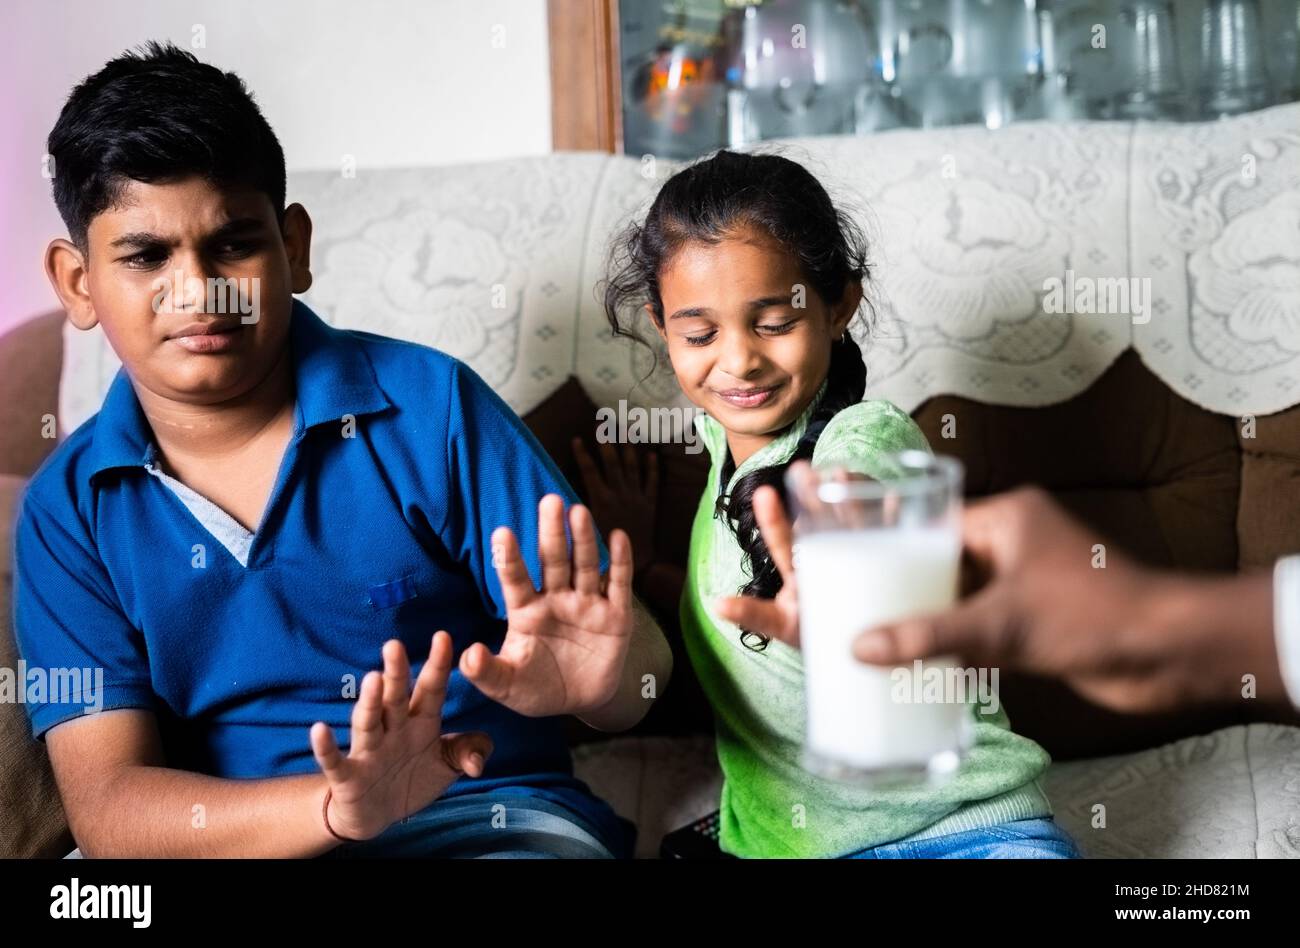 Indischer Teenager, der Kinder als Geschwister ablehnt oder sich weigert, Eltern Milch zu trinken, während sie zu Hause Fernsehen - Konzept ungesunder Ernährungsgewohnheiten Stockfoto